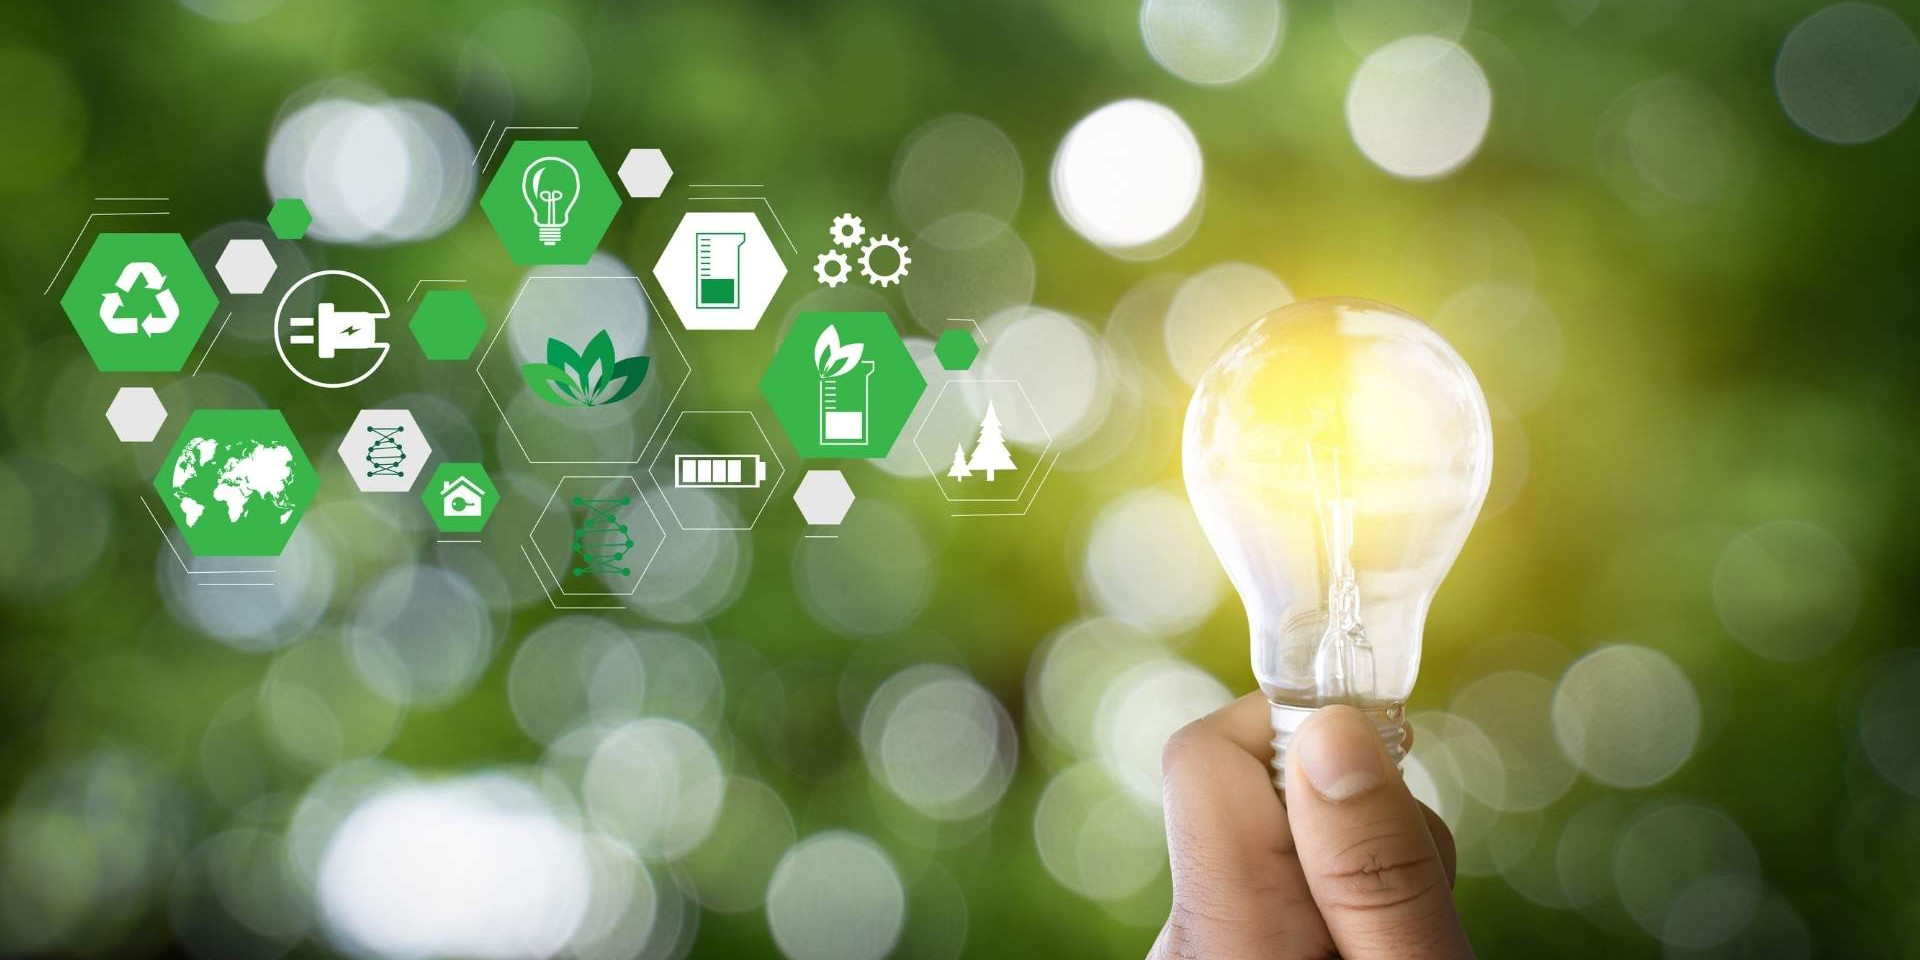 Eine Hand hält eine Glühbirne vor einem grünen Hintergrund, rechts davon sind mehrere kleine Icons rund um das Thema Energie und Nachhaltigkeit zu sehen